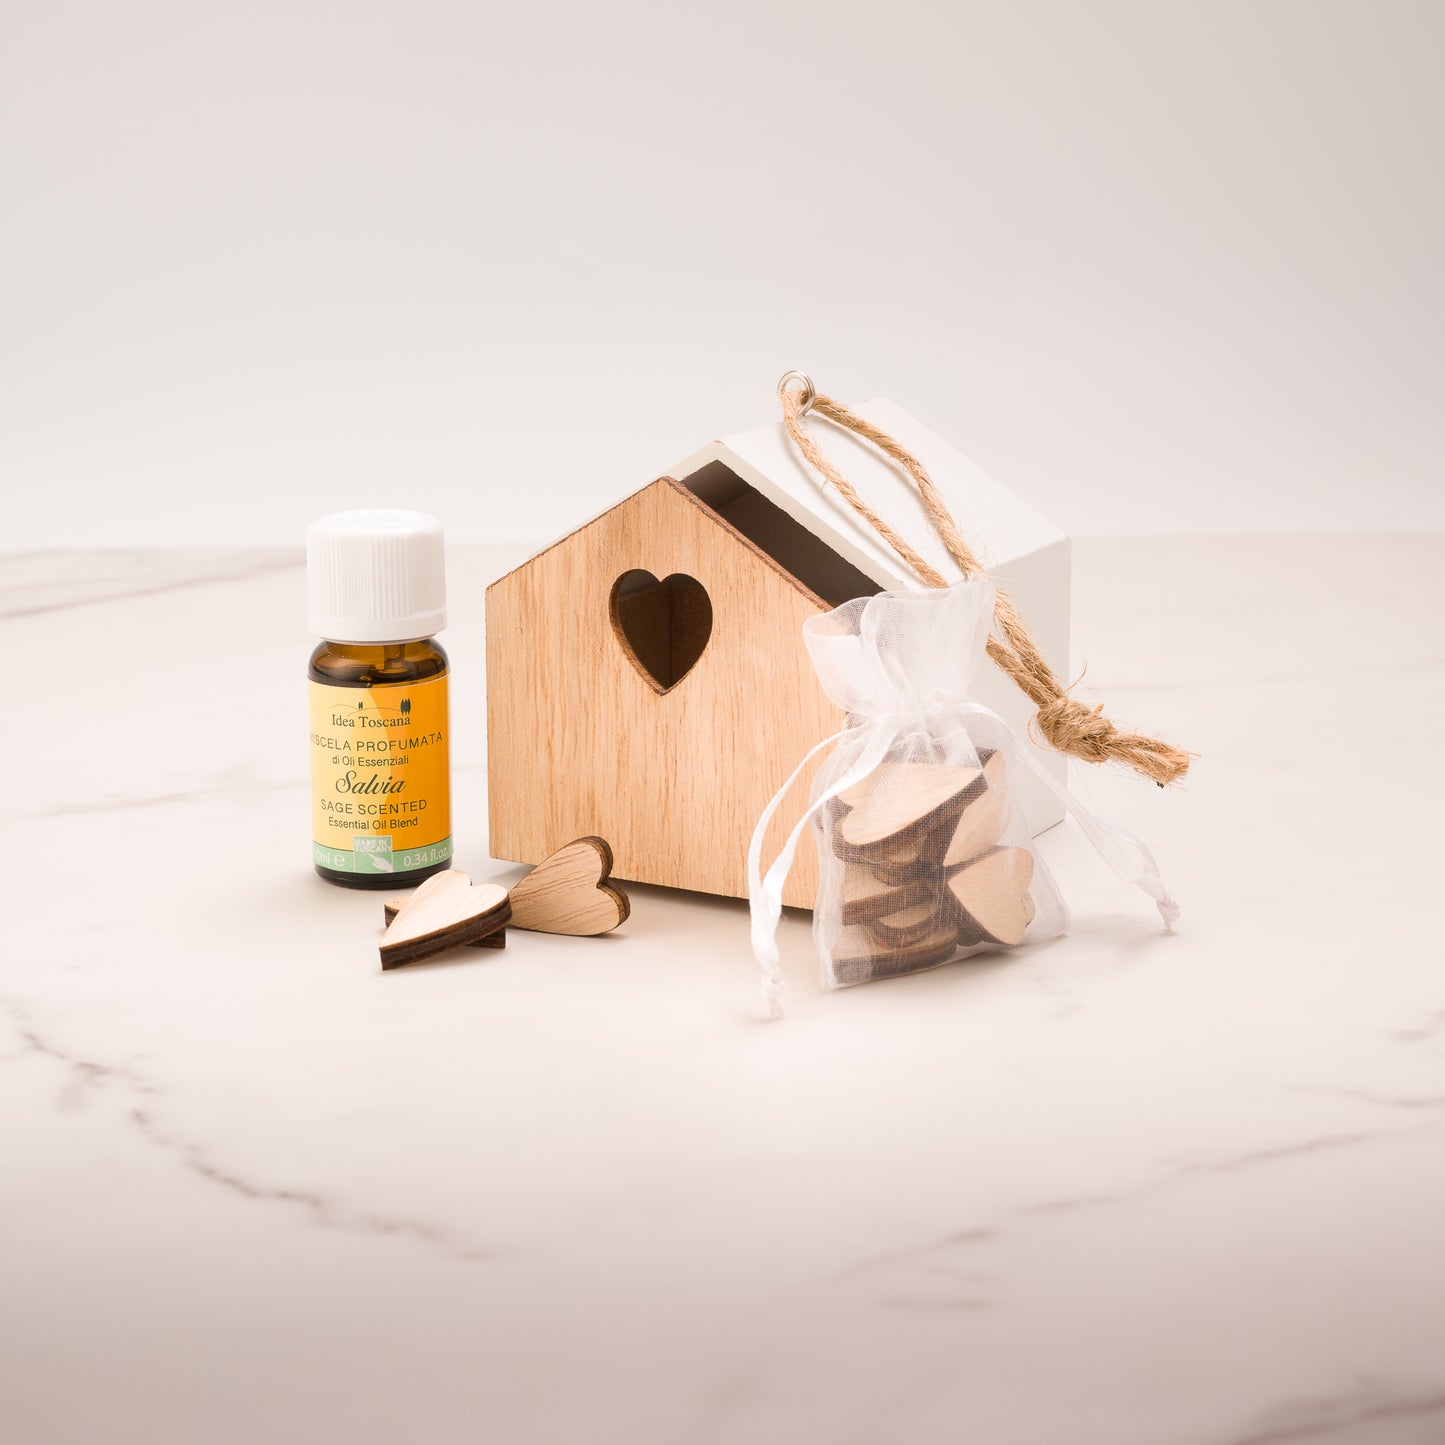 Gift idea Box of essential oils - Idea Toscana